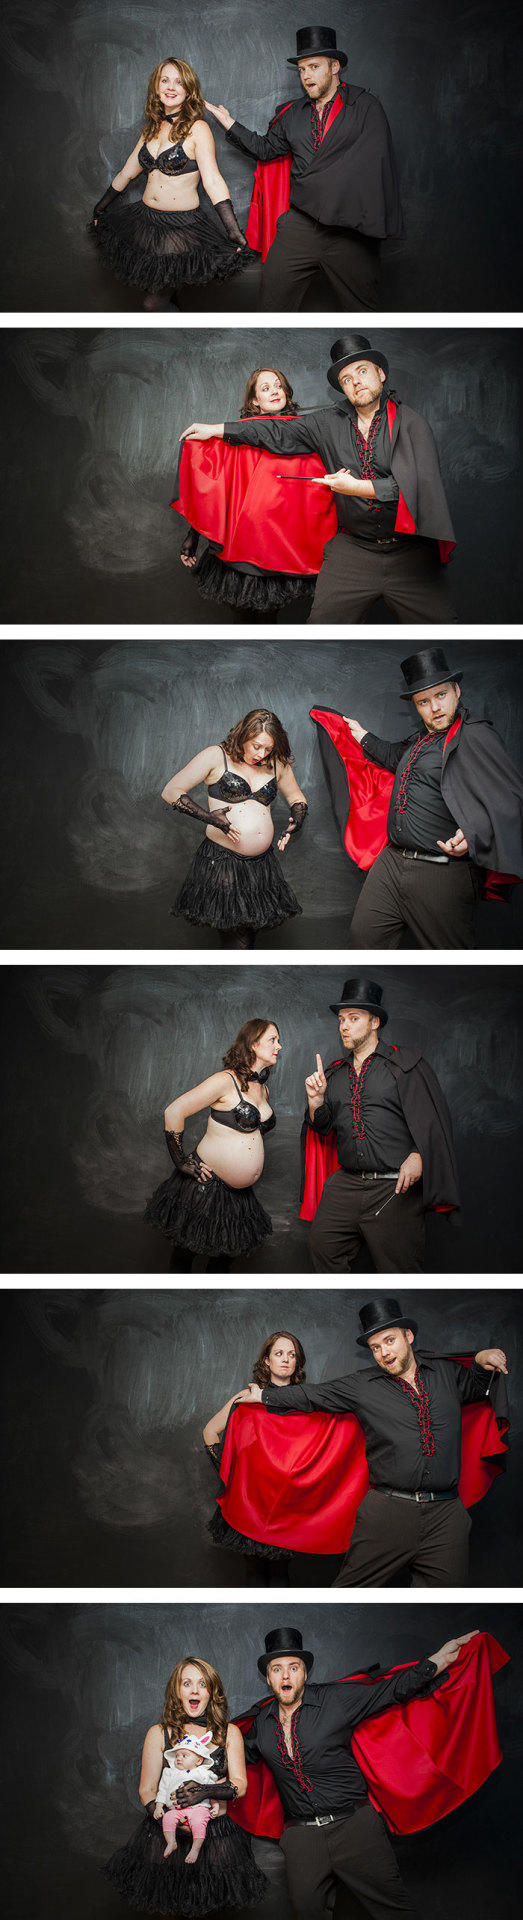 Emocjonalna petarda - ujmujące zdjęcia, które pokazują niesamowitą magię ciąży oraz narodzin